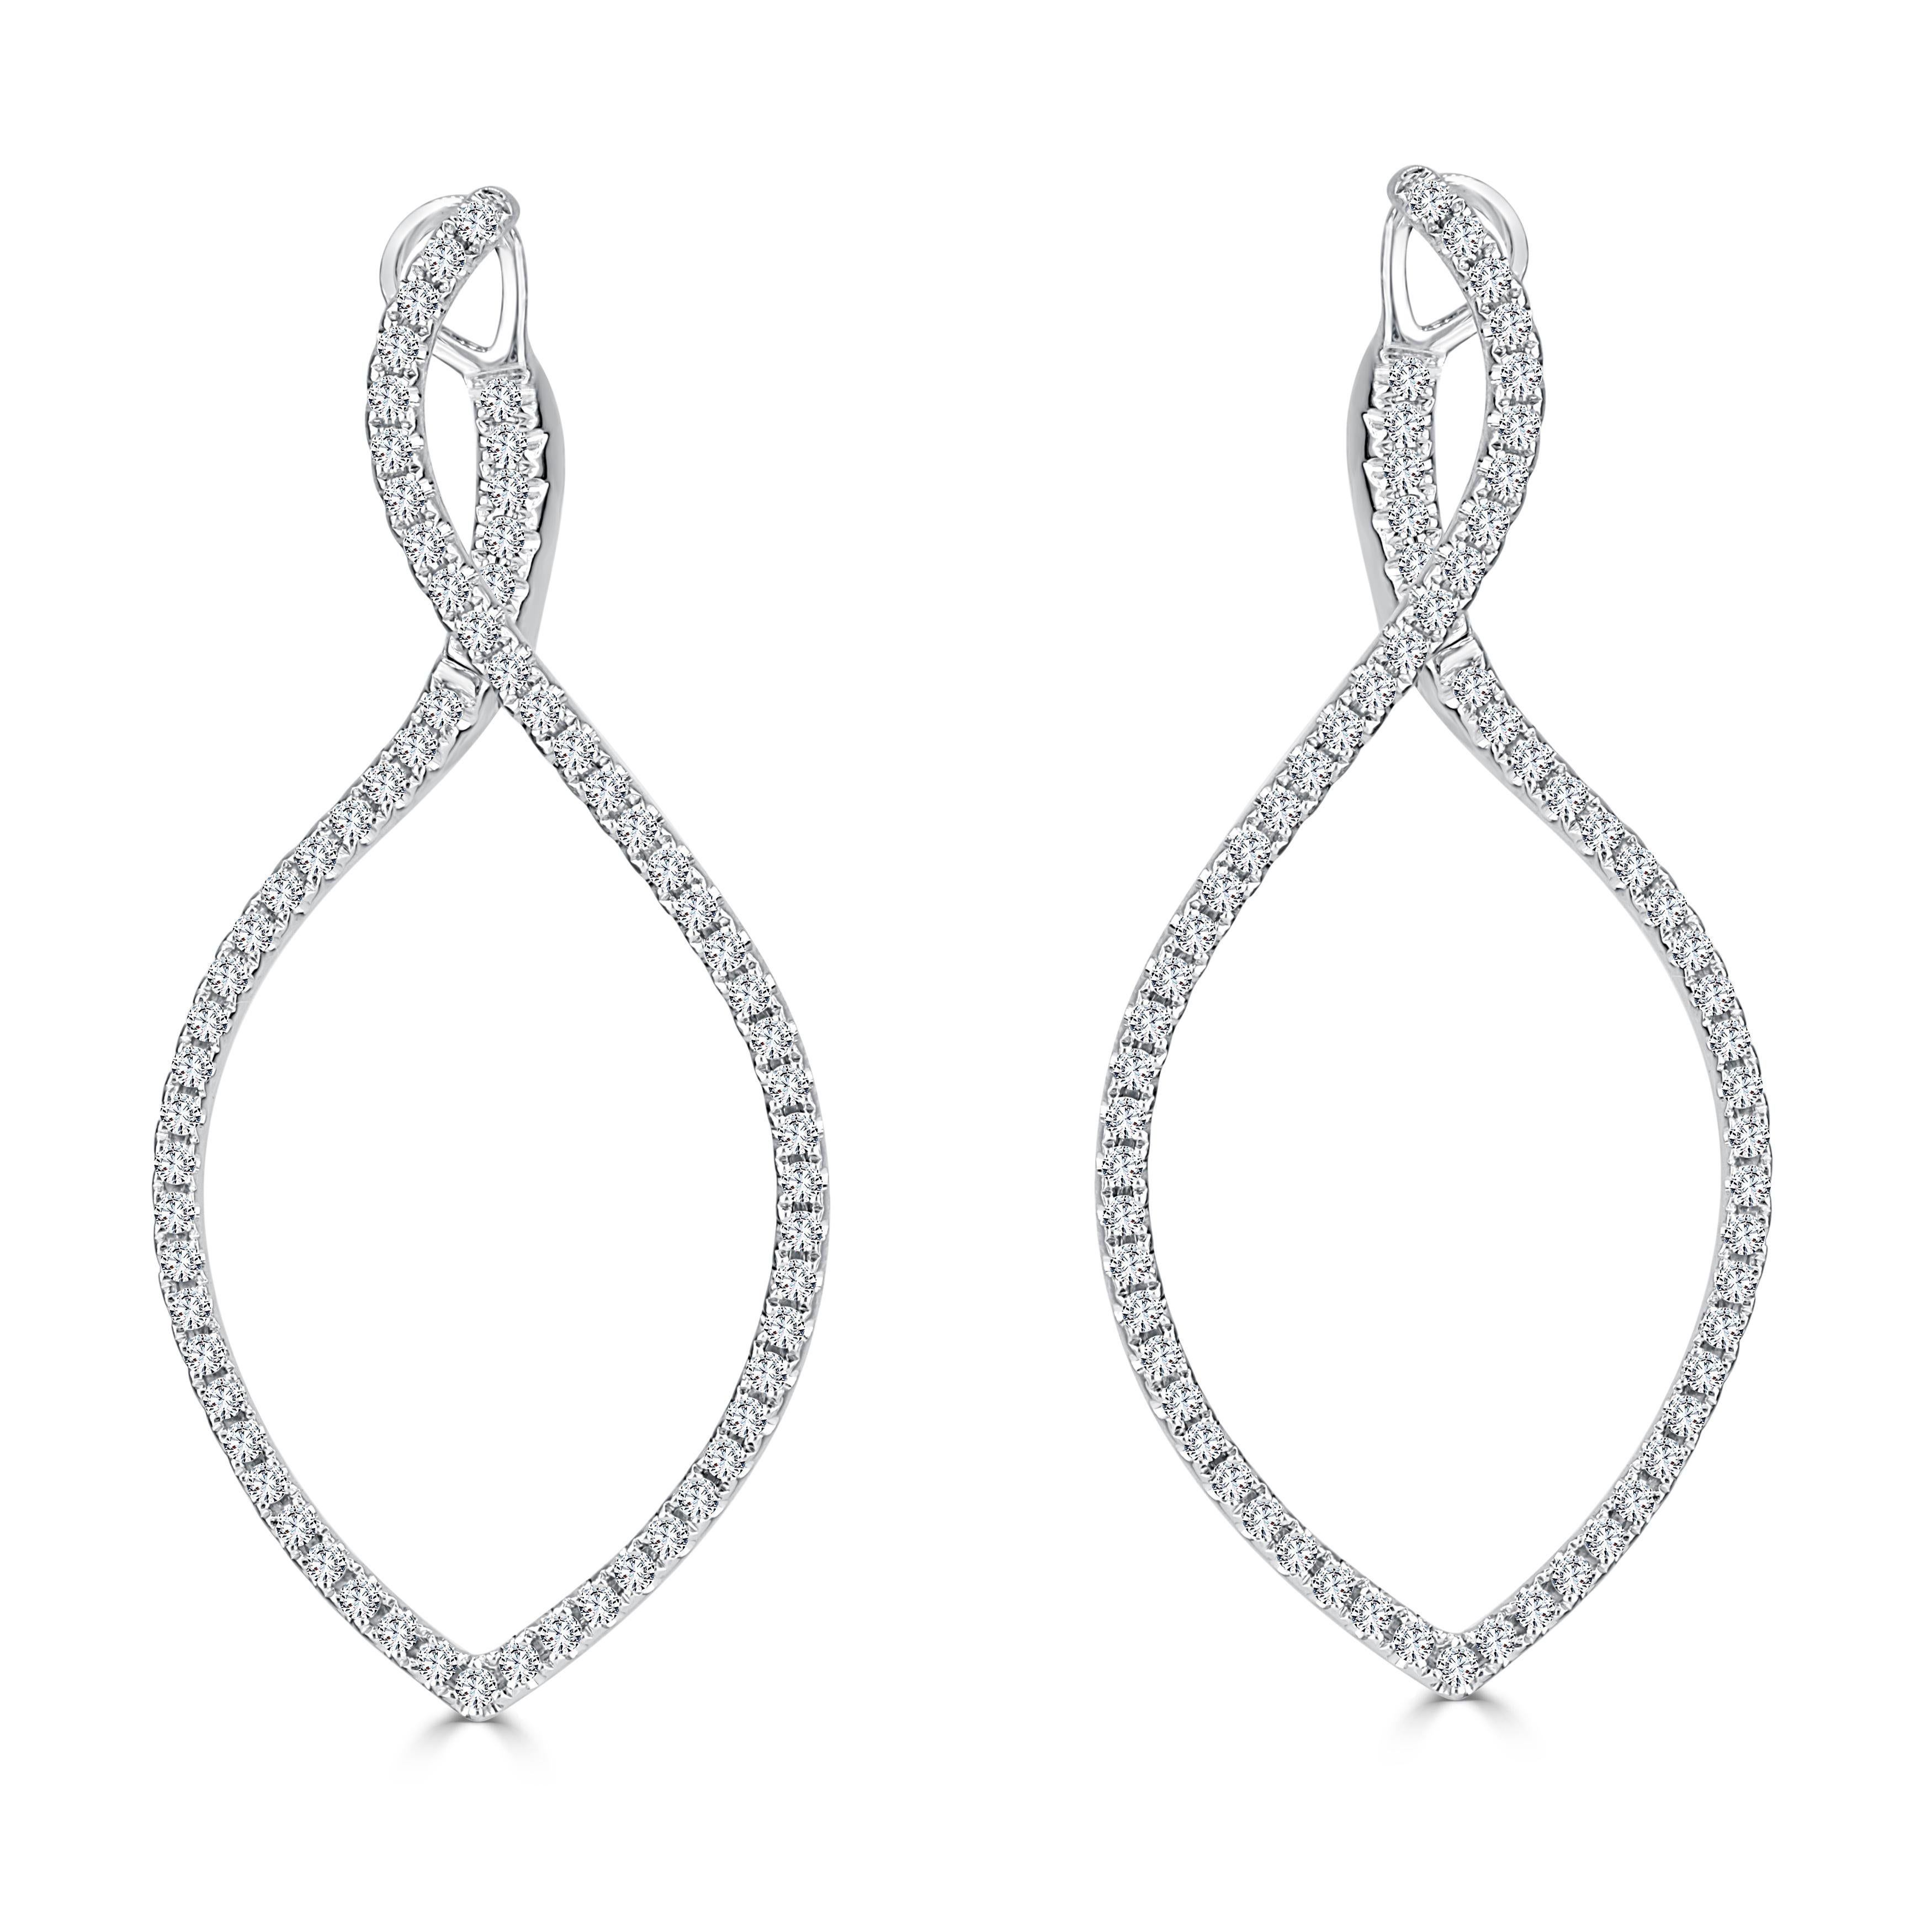 Round Cut 1.01 Carat Swirl Twist Hoop Diamond Earrings in 14 Karat White Gold ref1698 For Sale